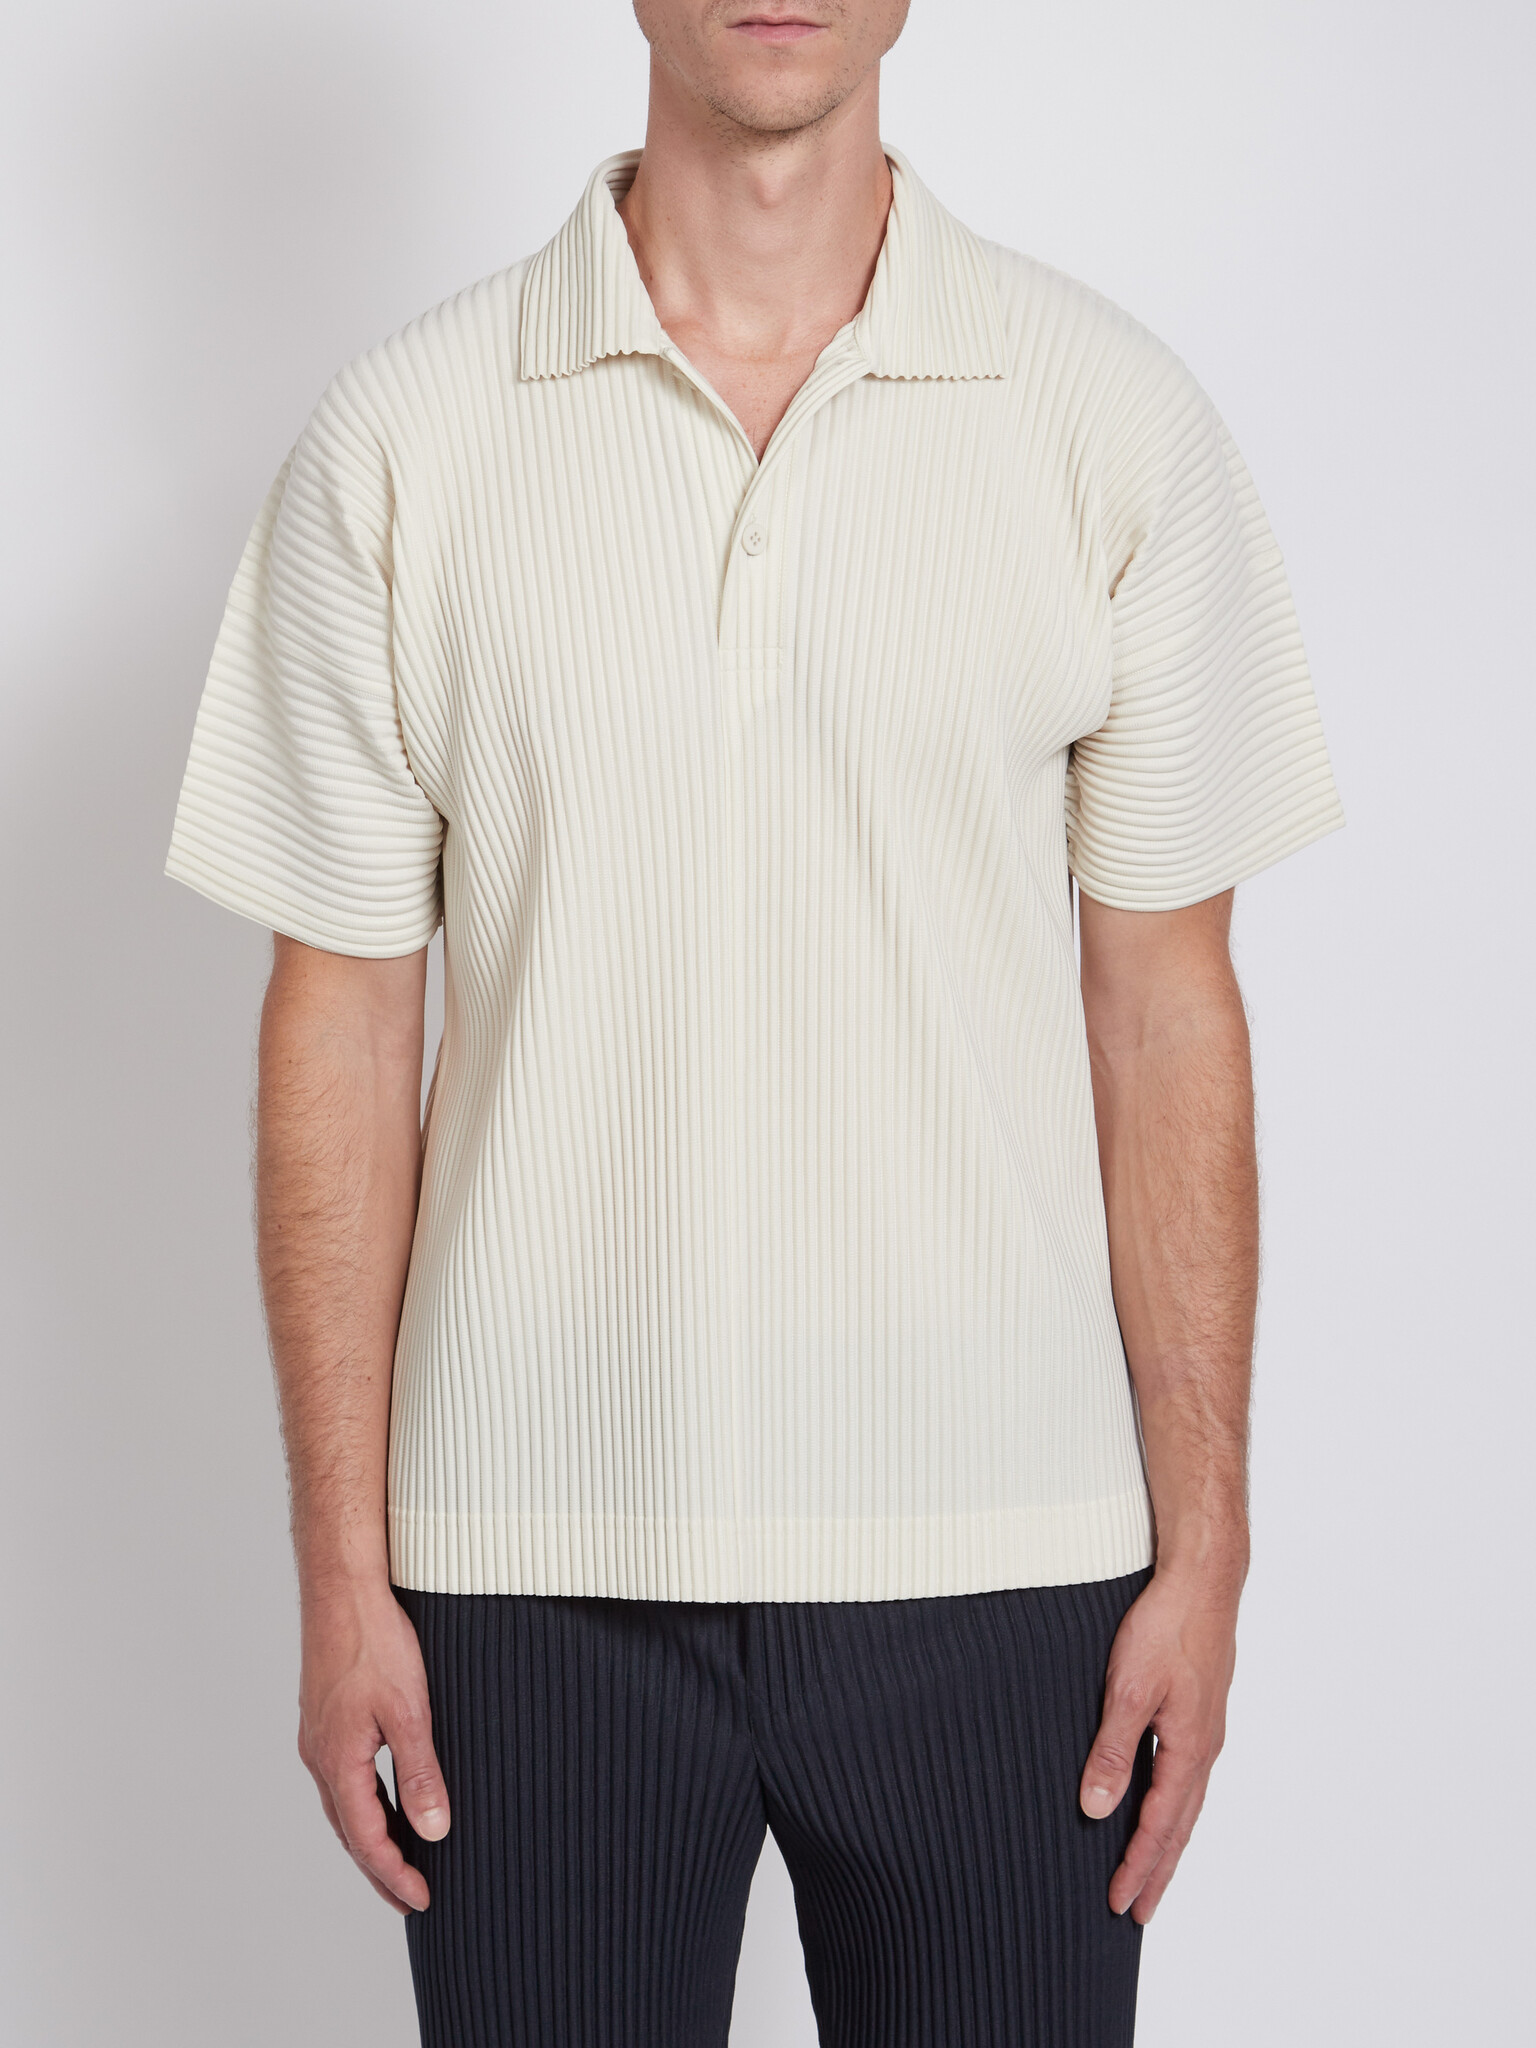 Men's Designer Short Sleeve Polos